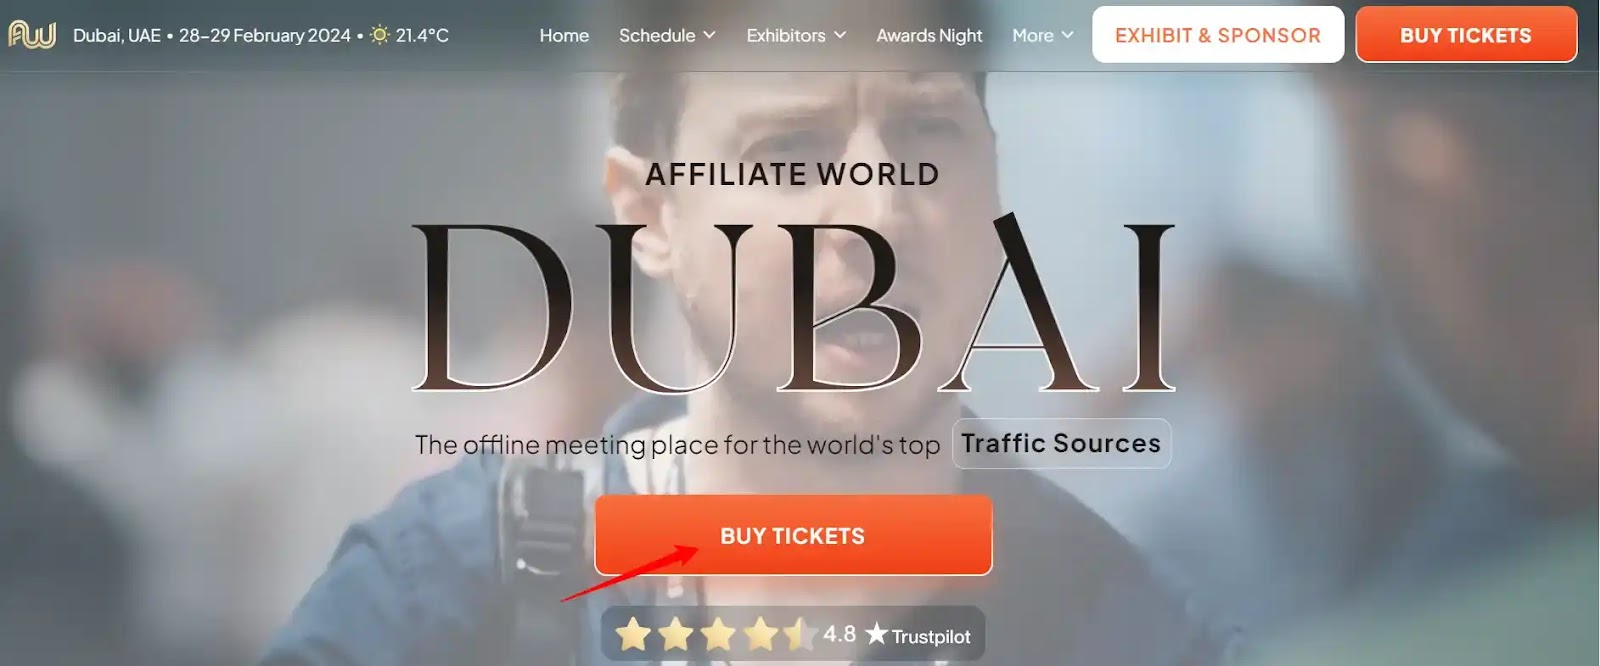 Affiliate World Dubai 2024